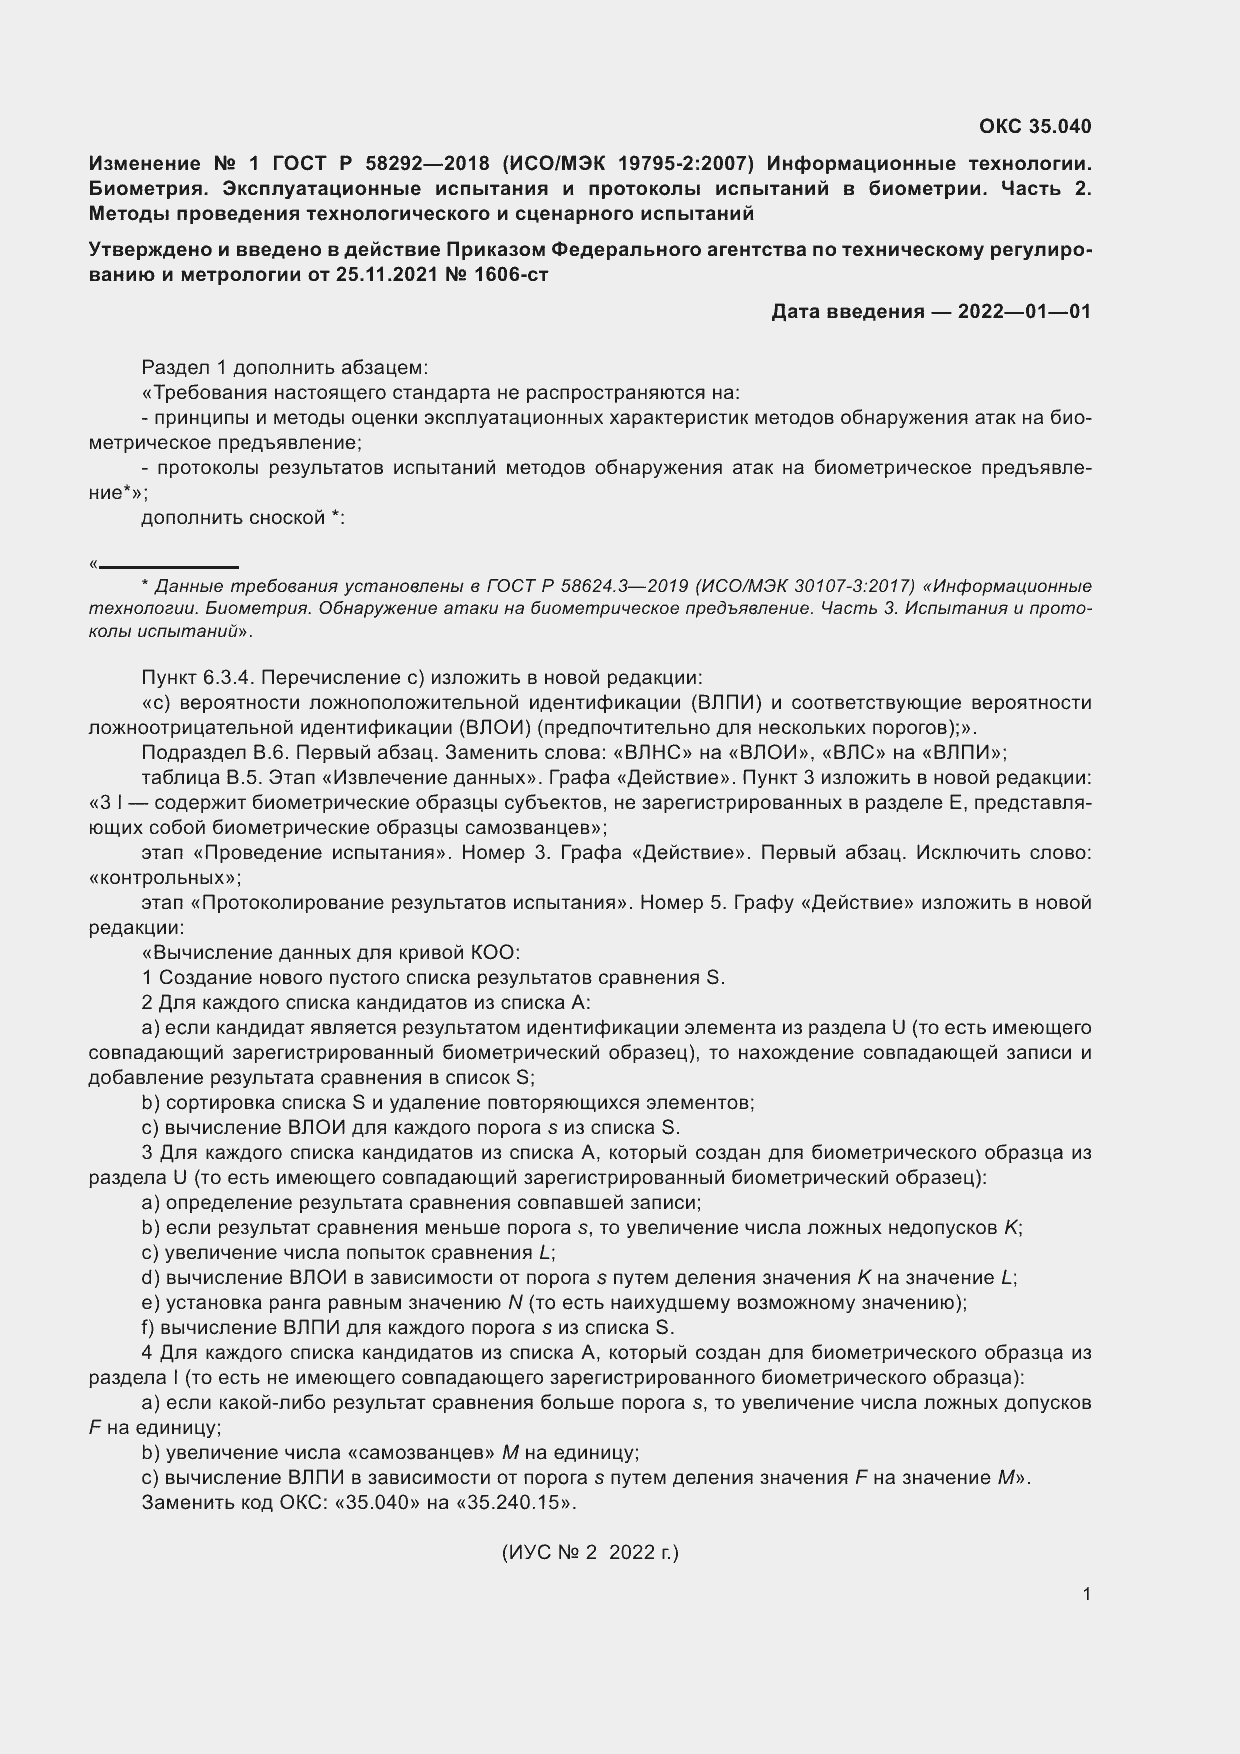 Изменение №1 к ГОСТ Р 58292-2018